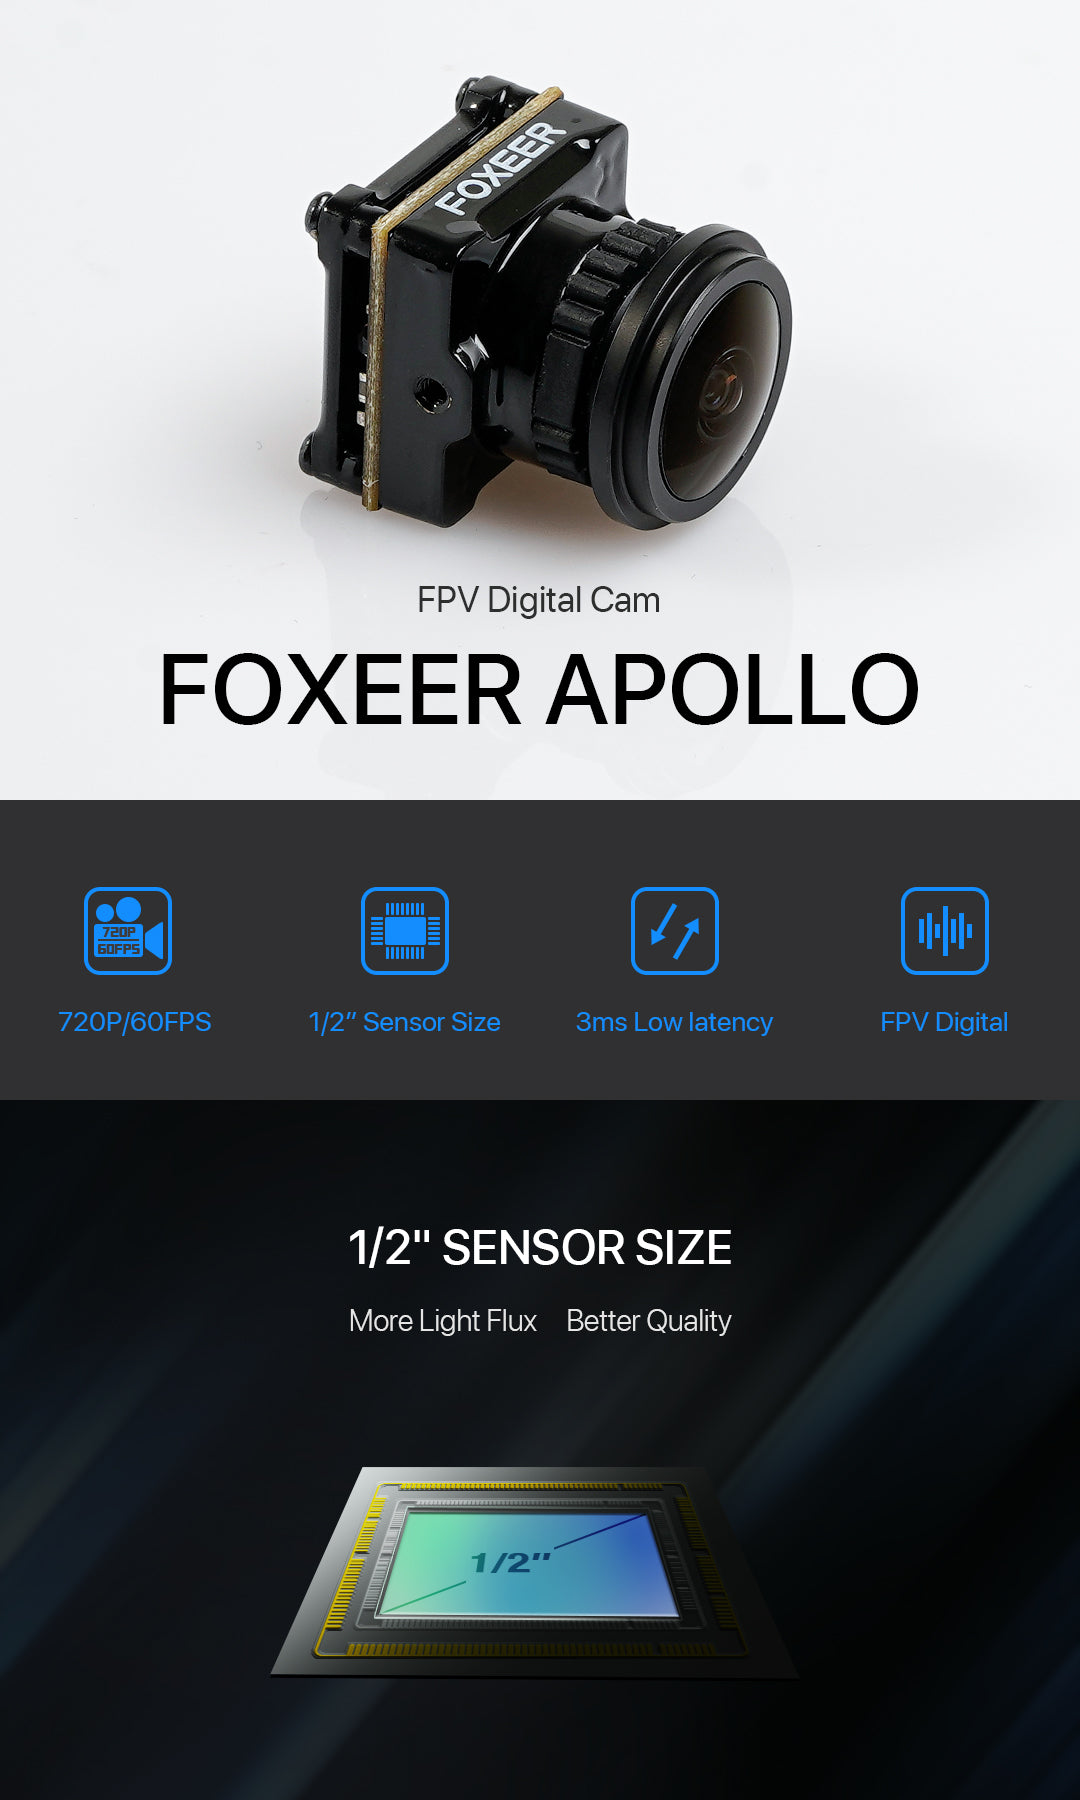 Foxeer Apollo DJI FPV Camera